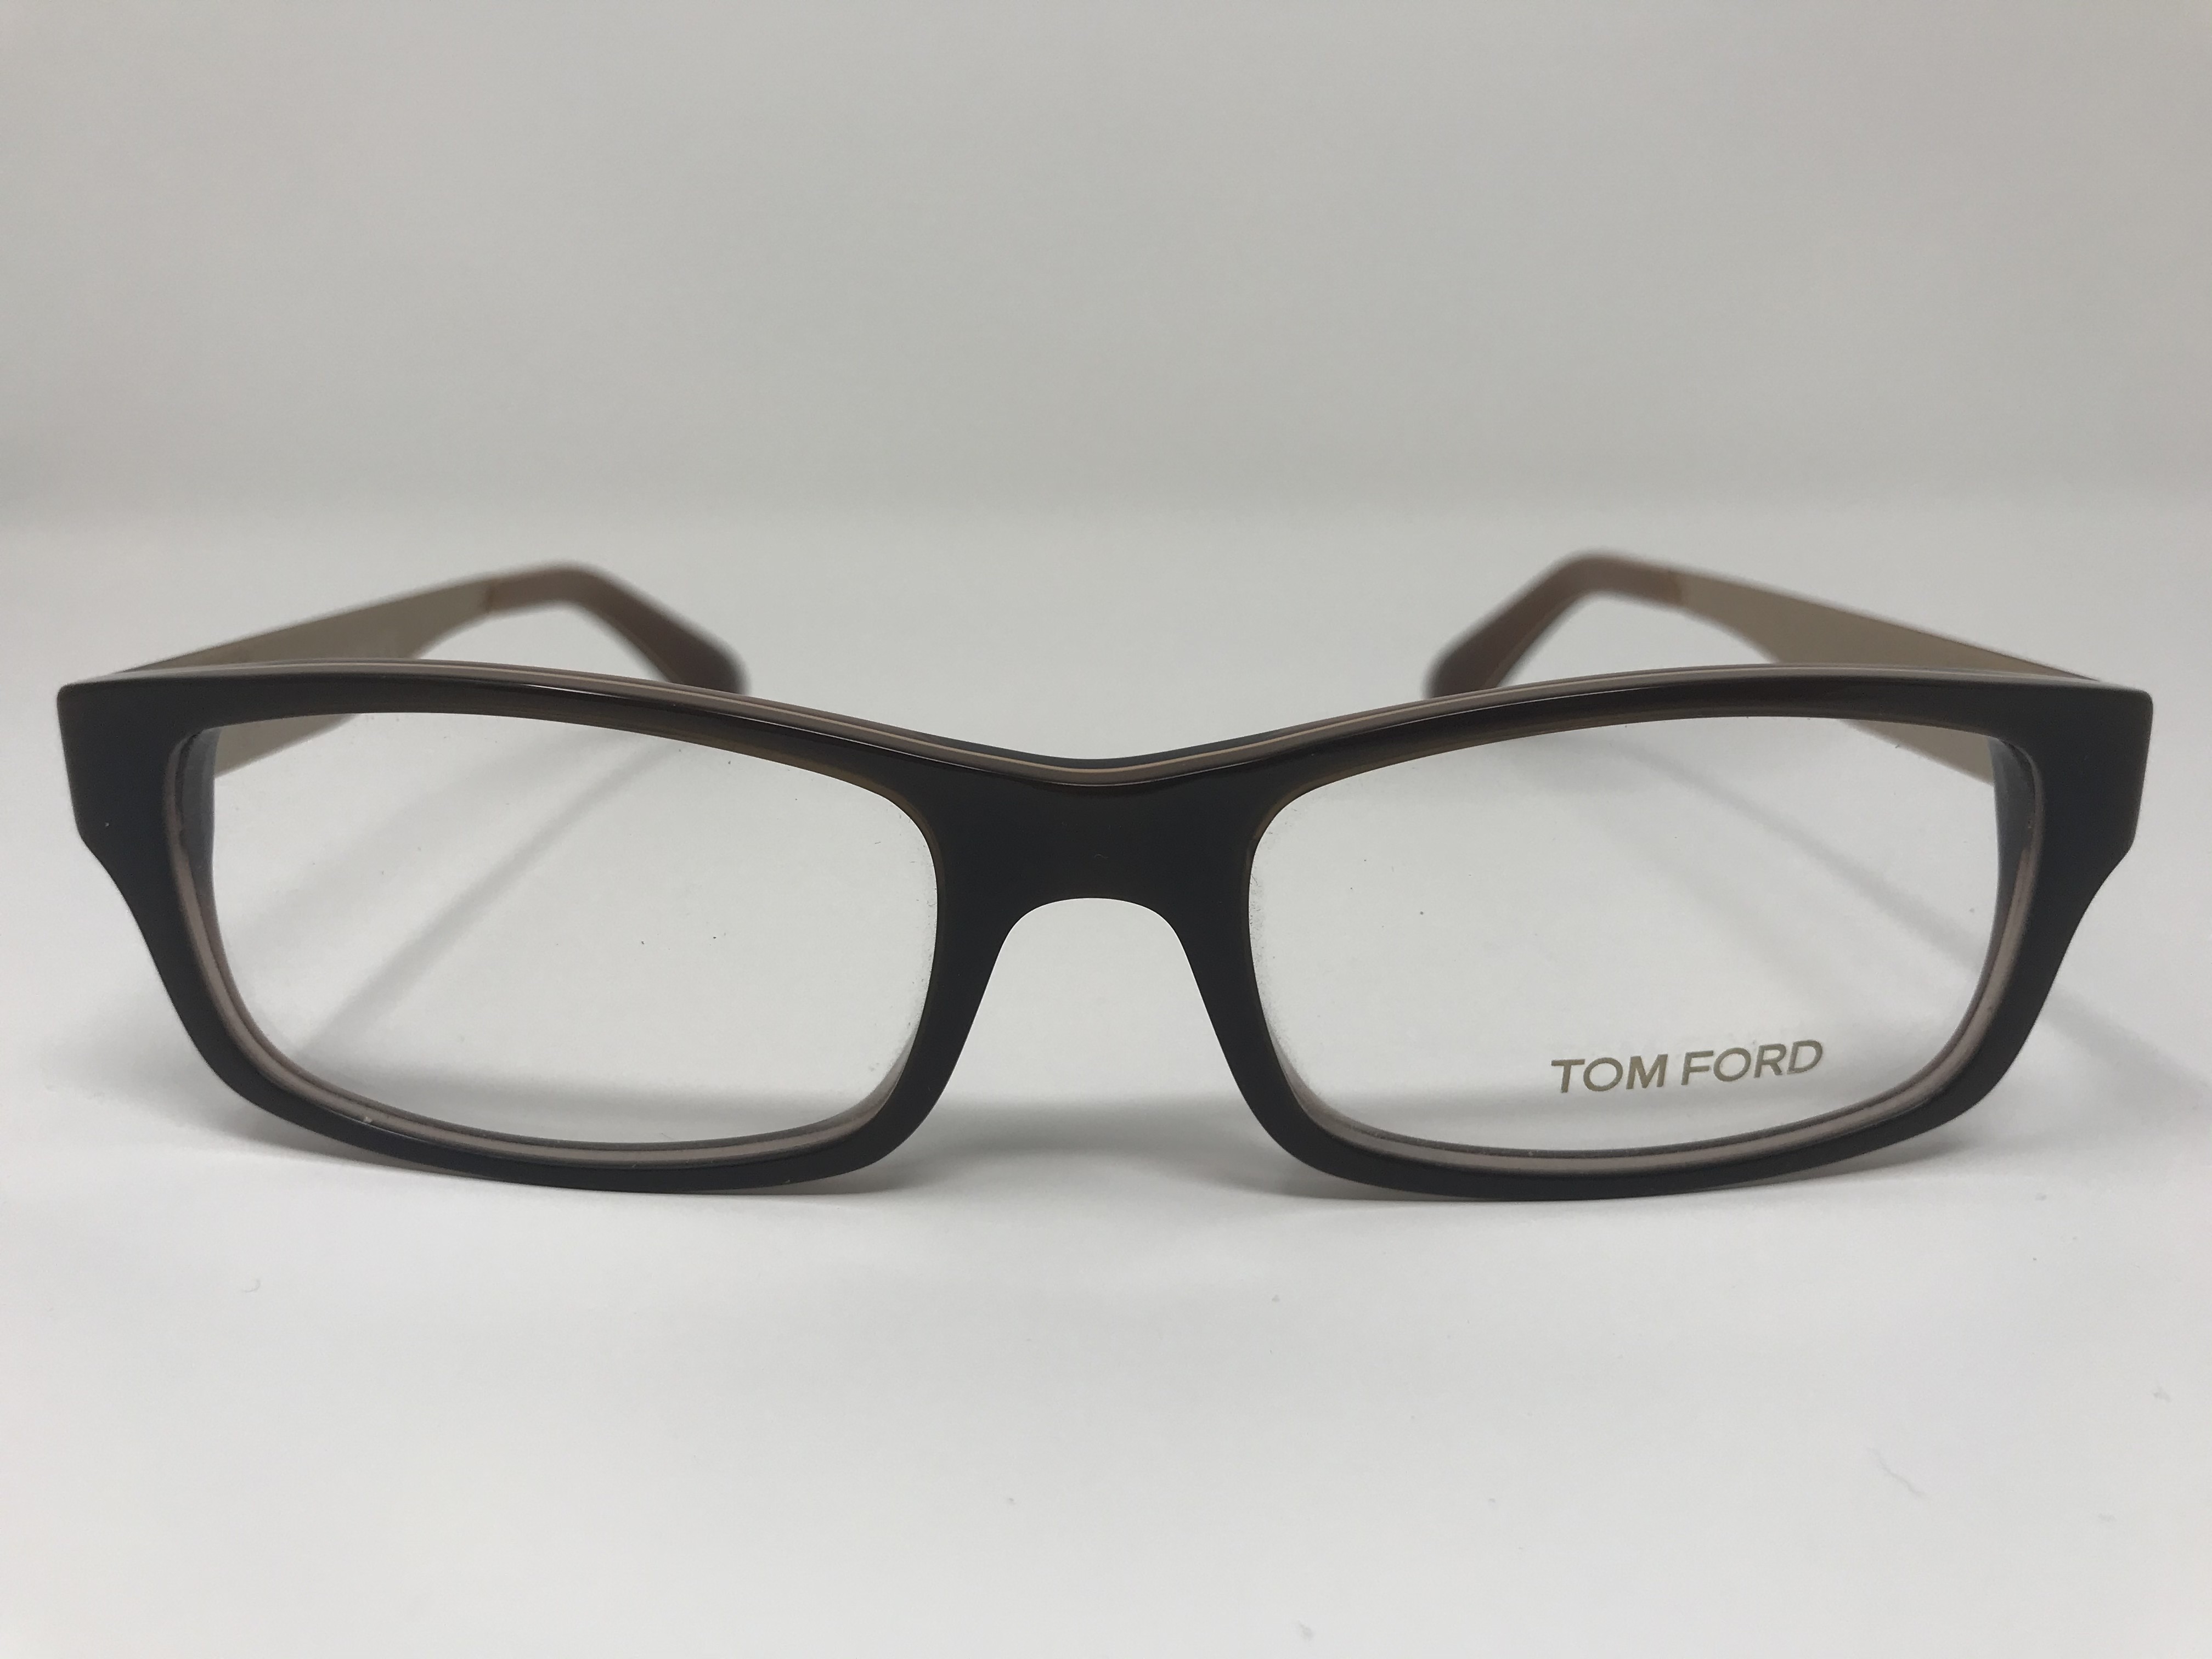 Tom Ford TF 5164 Unisex eyeglasses